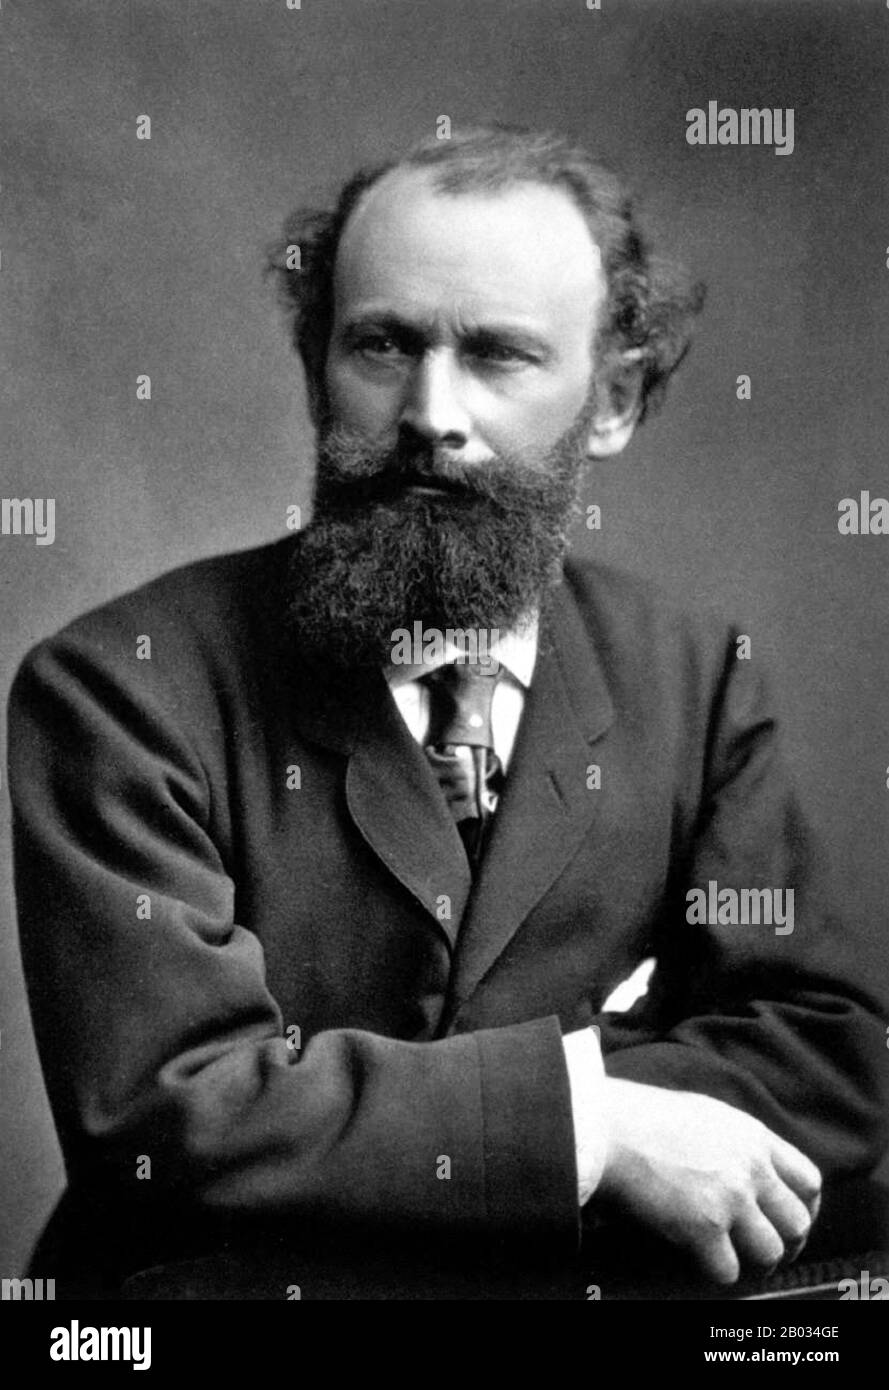 Edouard Manet Edouard Manet (Parigi, 23 gennaio 1832 – 30 aprile 1883) è stato un . Fu uno dei primi artisti del 19th secolo a dipingere la vita moderna, e una figura chiave nella transizione dal Realismo all'impressionismo. Foto Stock